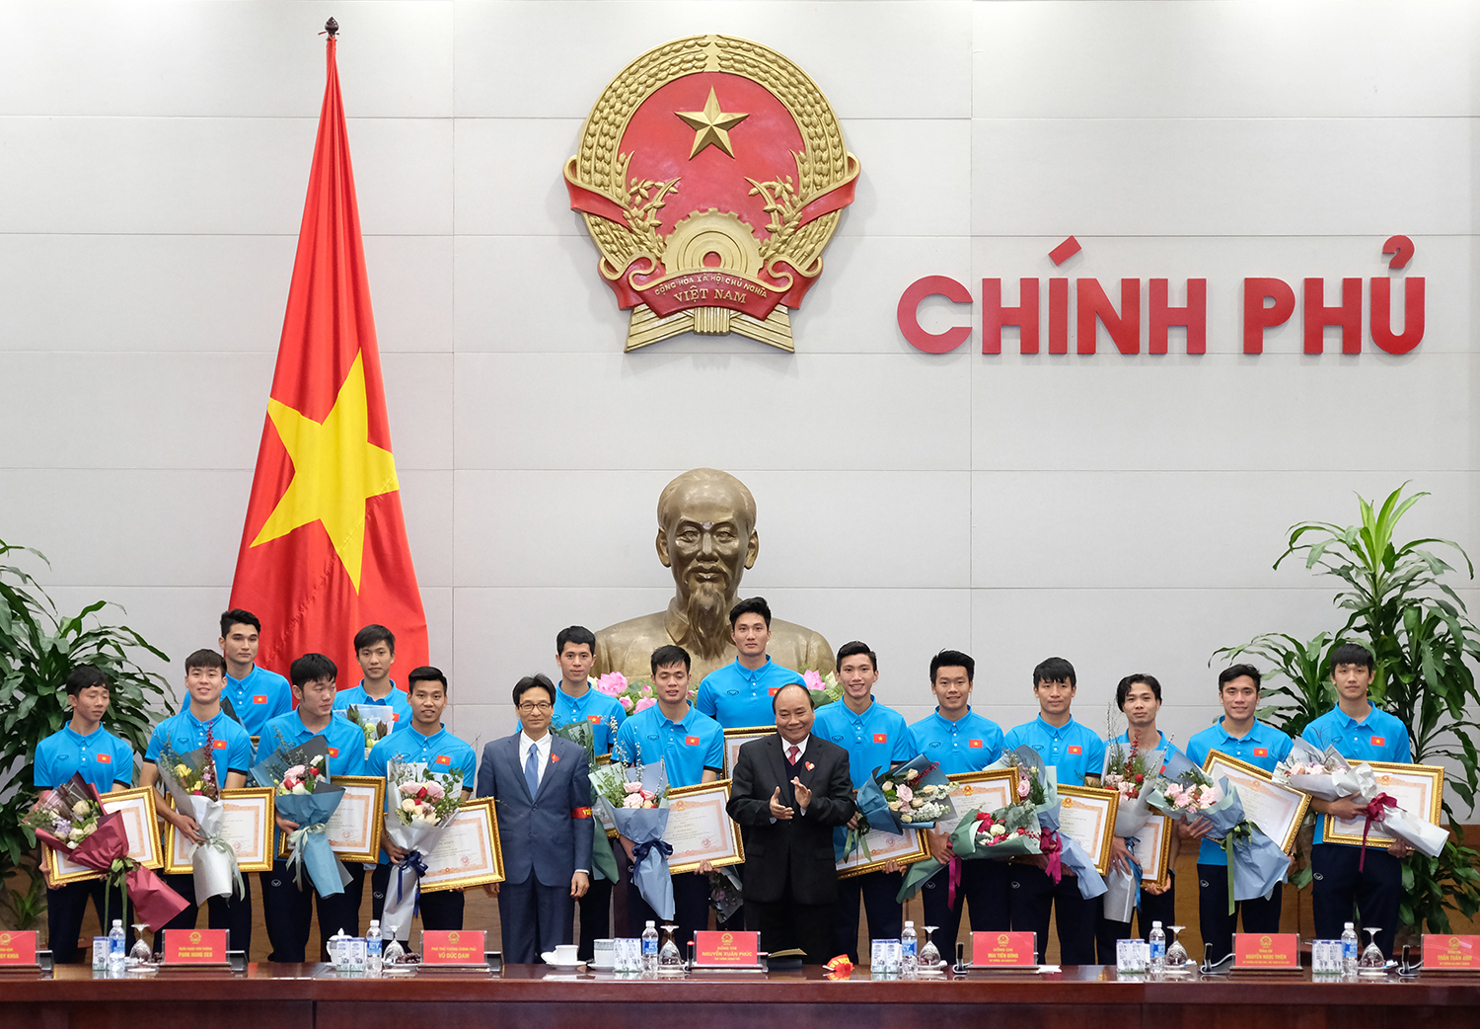 Thủ tướng nhấn mạnh: “Các bạn đã vô địch trong 90 triệu con tim người Việt Nam”. Nguồn: internet